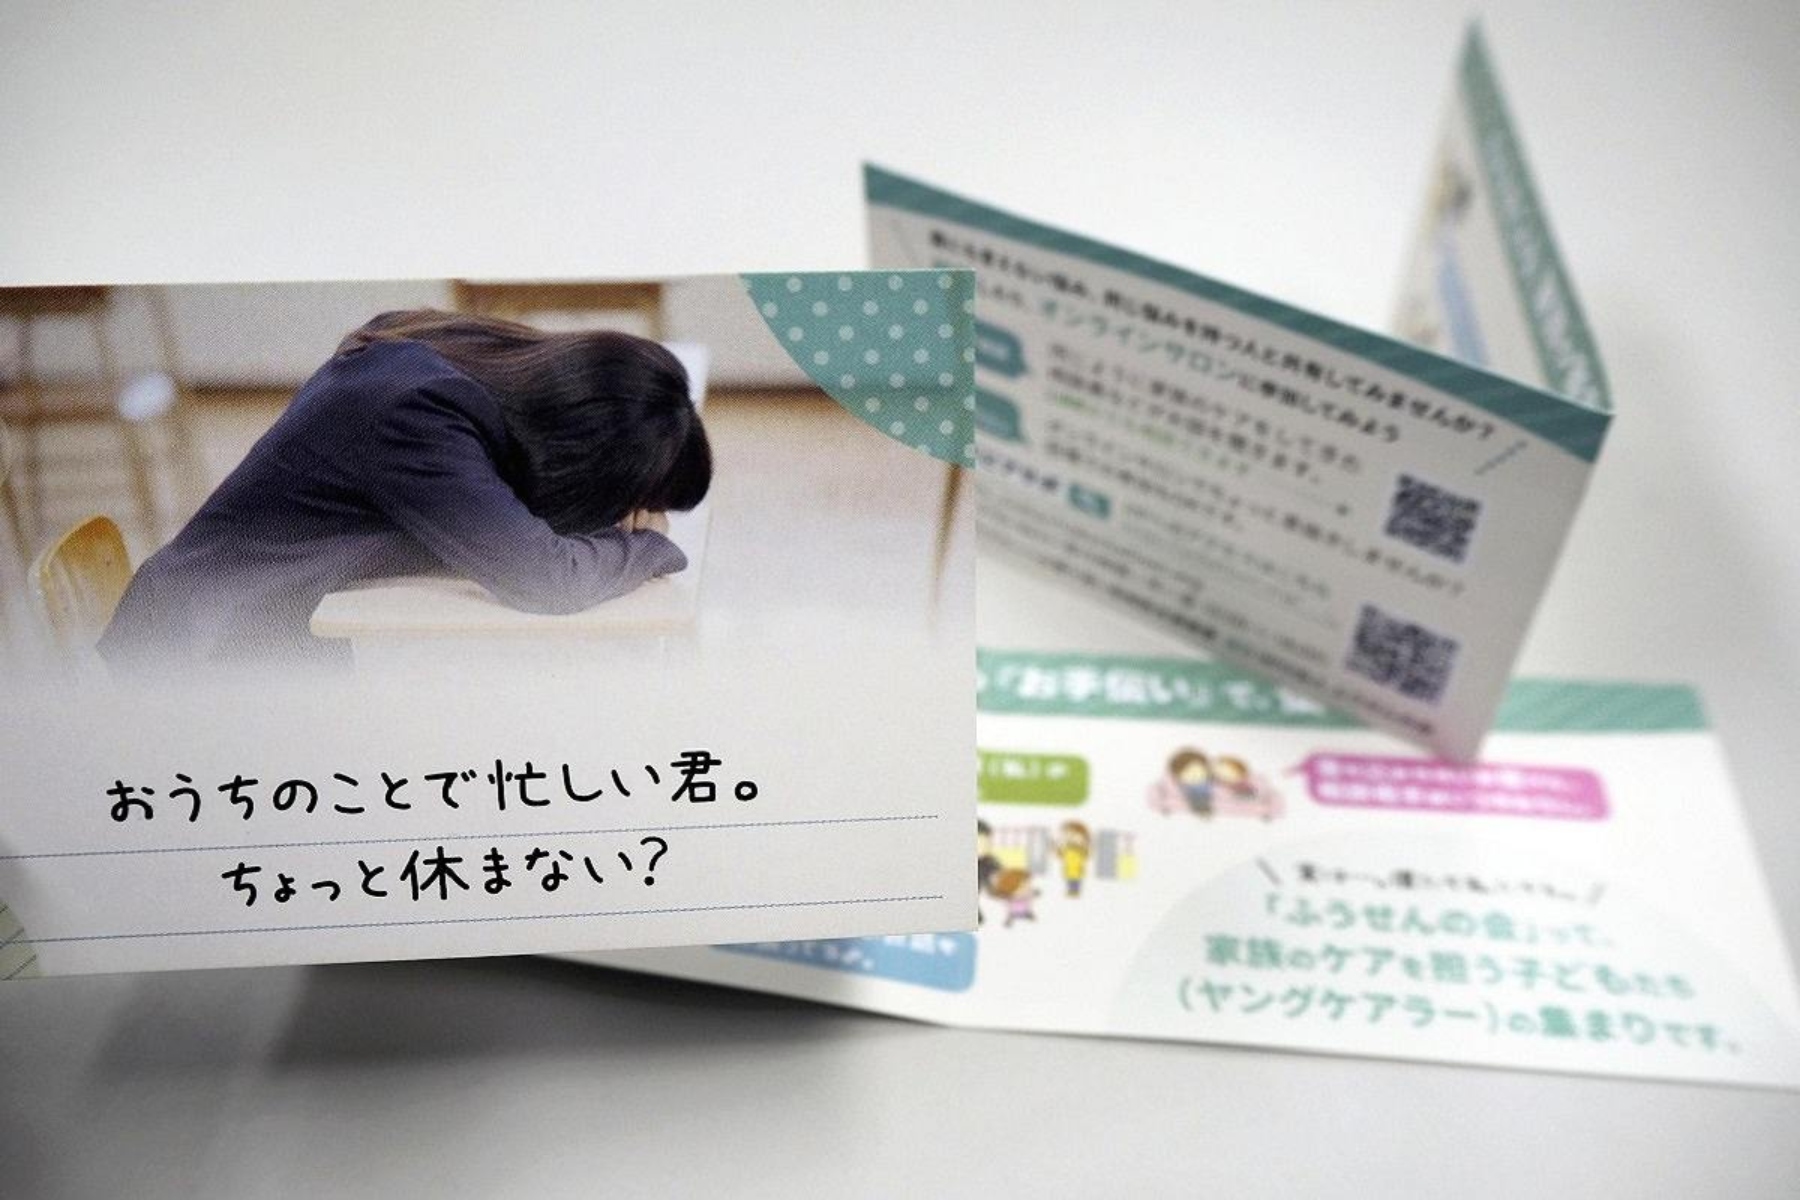 Ιαπωνία φροντιστές: Η Ιαπωνία θα ενισχύσει την υποστήριξη για τους νέους φροντιστές